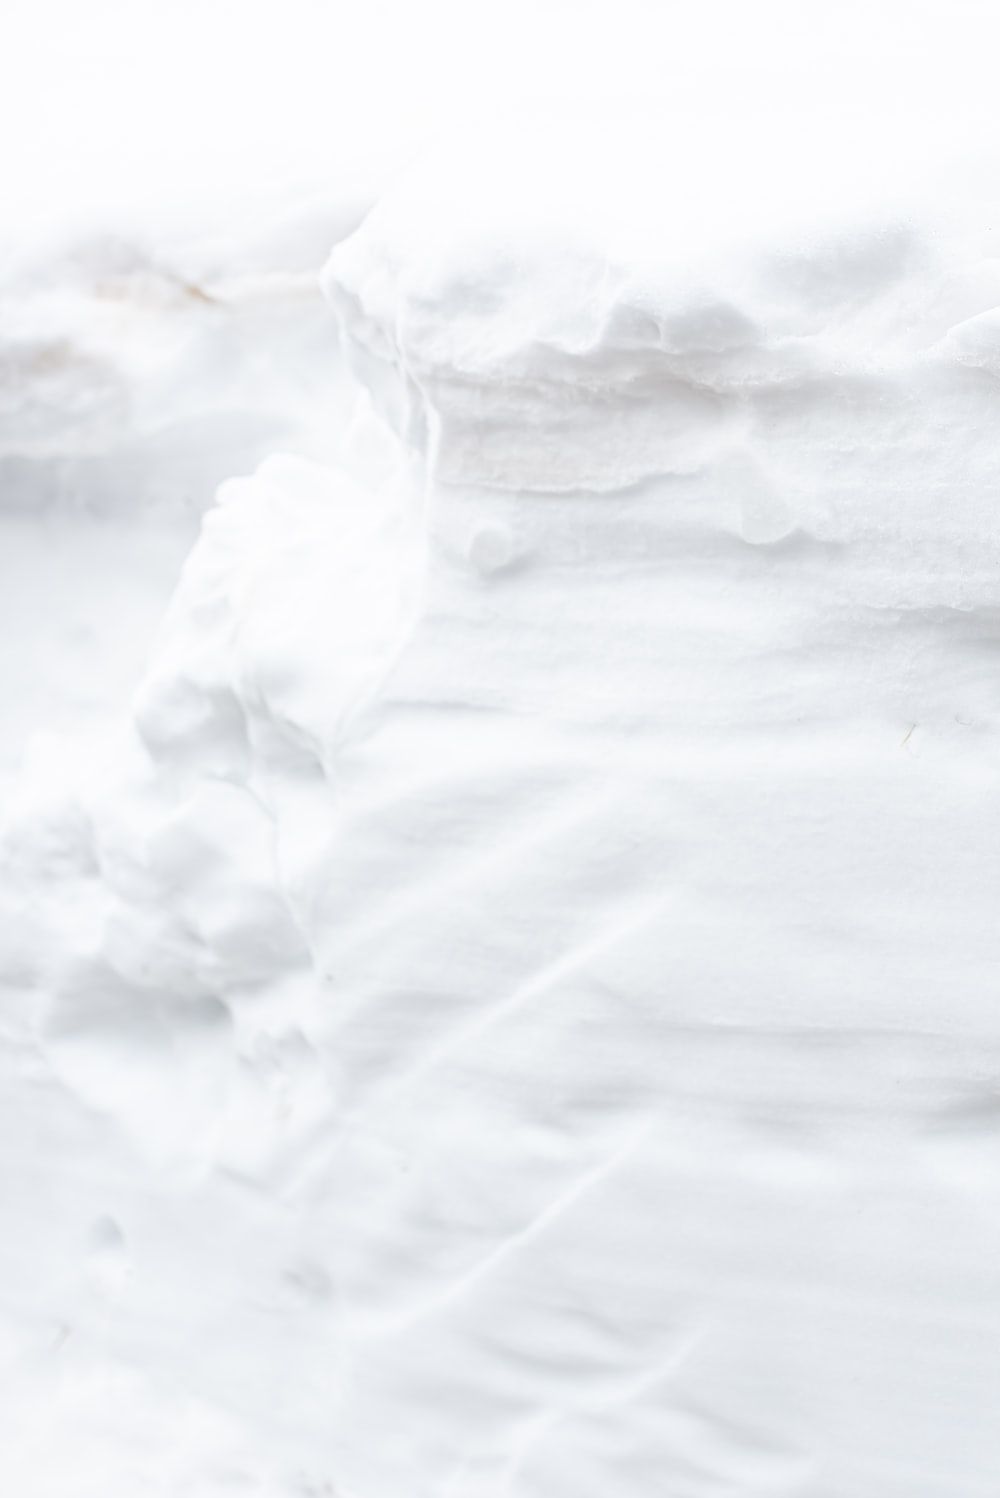  Eis Hintergrundbild 1000x1498. Foto zum Thema Weißes Eis auf weißem Textil